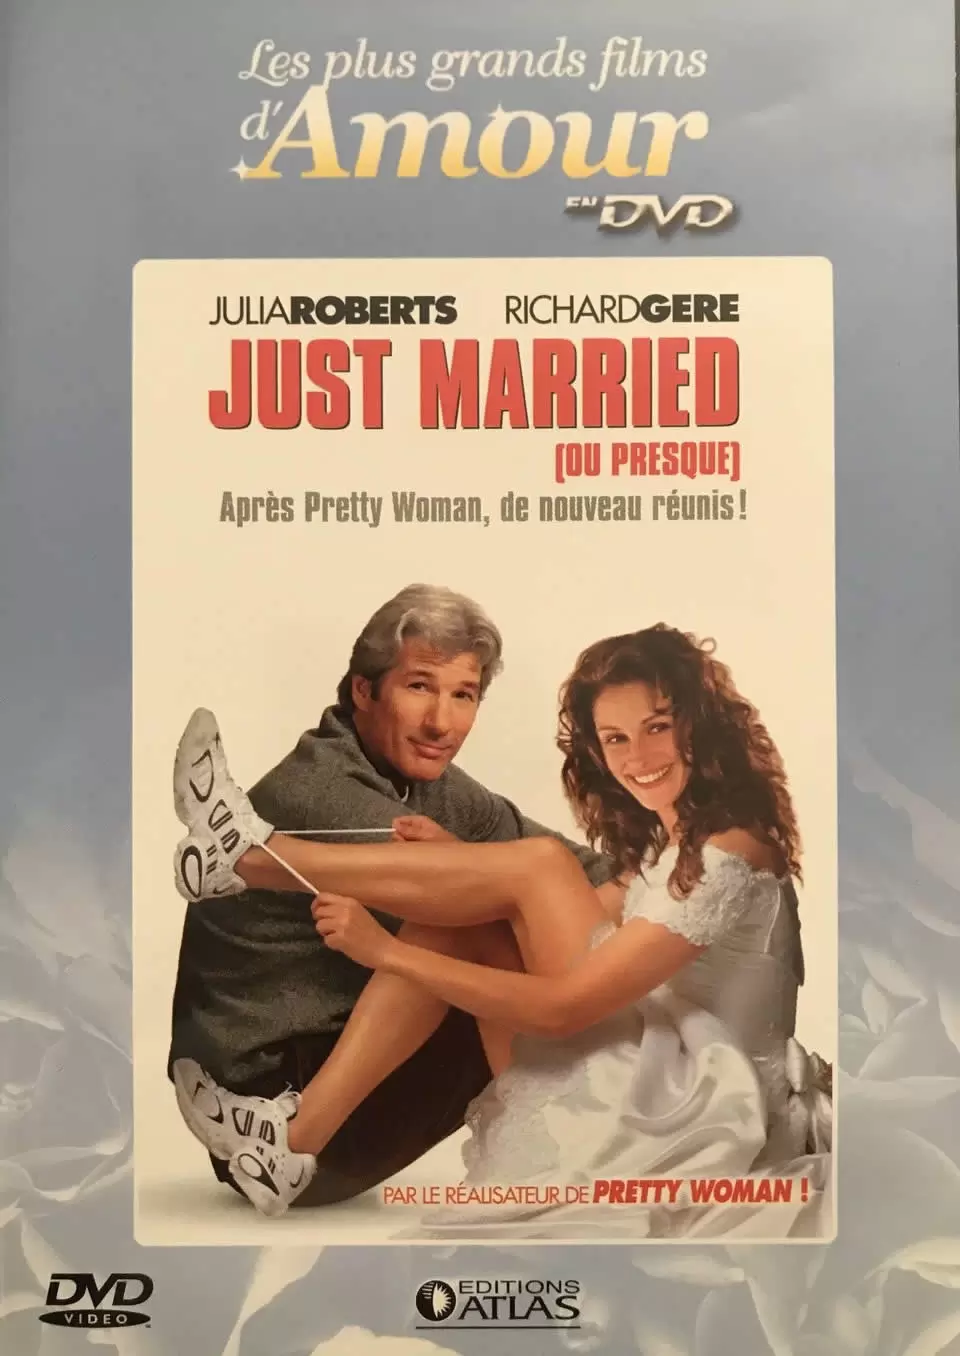 Les plus grands films d\'amour en DVD - Just married (Ou presque)